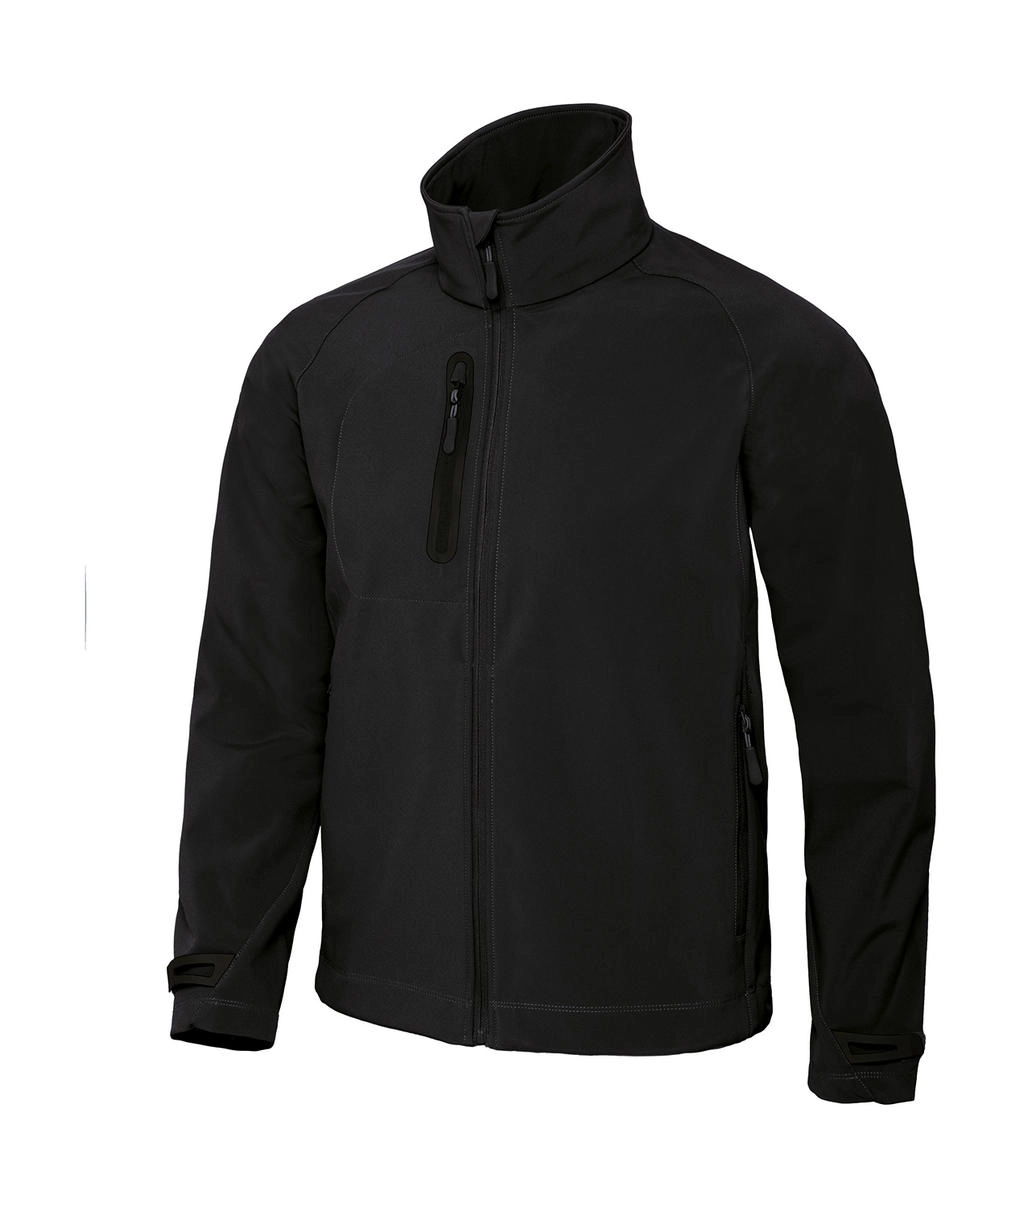 X-Lite Softshell/men Jacket zum Besticken und Bedrucken in der Farbe Black mit Ihren Logo, Schriftzug oder Motiv.